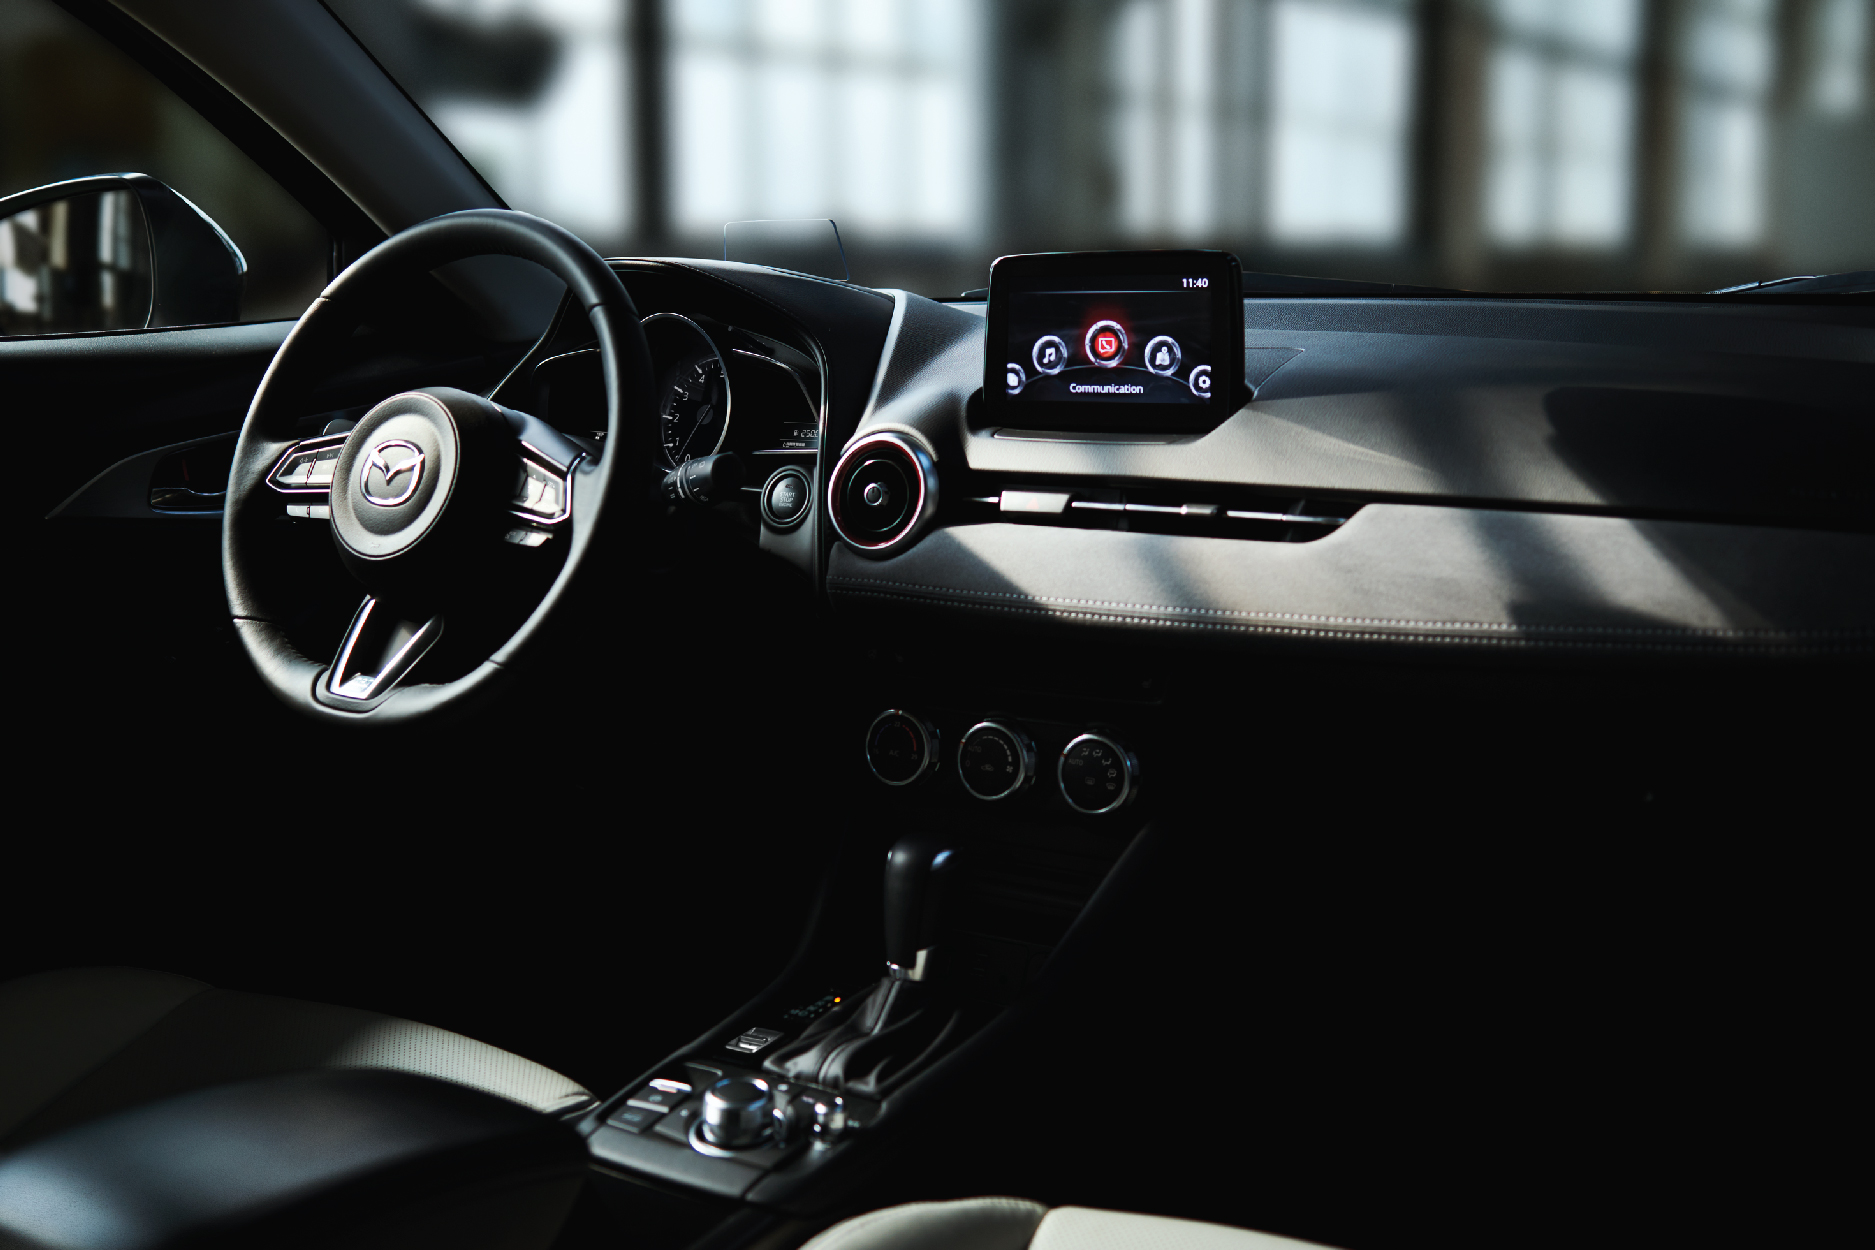 New Mazda CX-3 giải quyết ‘bài toán’ chọn SUV đô thị tiện nghi, an toàn - Ảnh 4.